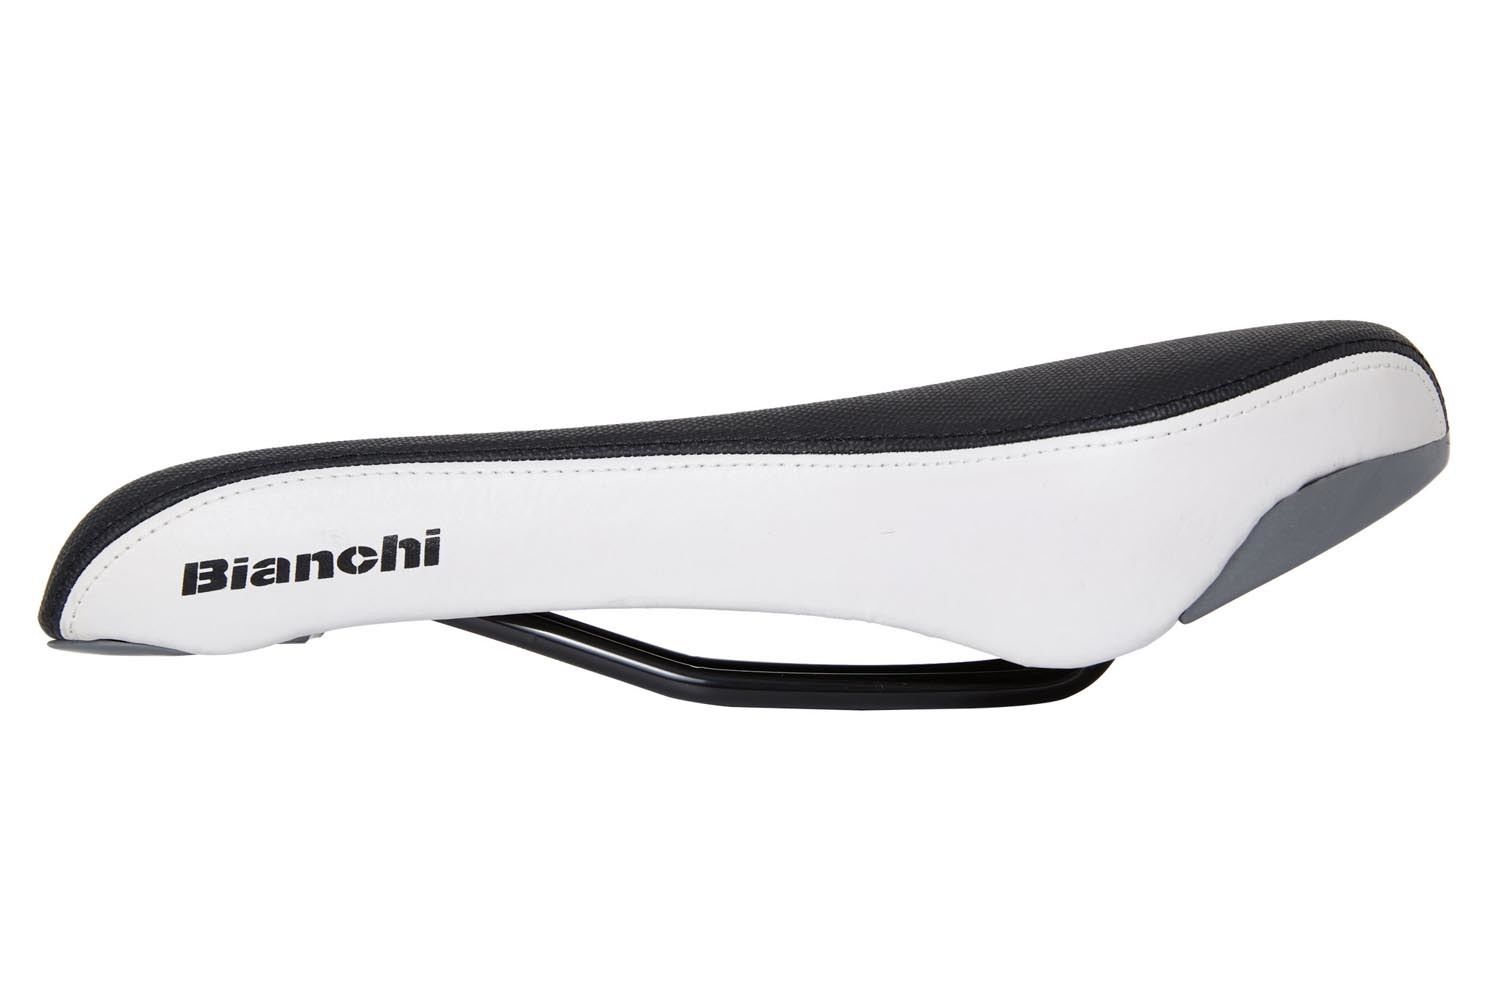 Bianchi schwarz/weiß Fahrradsattel Touren MTB